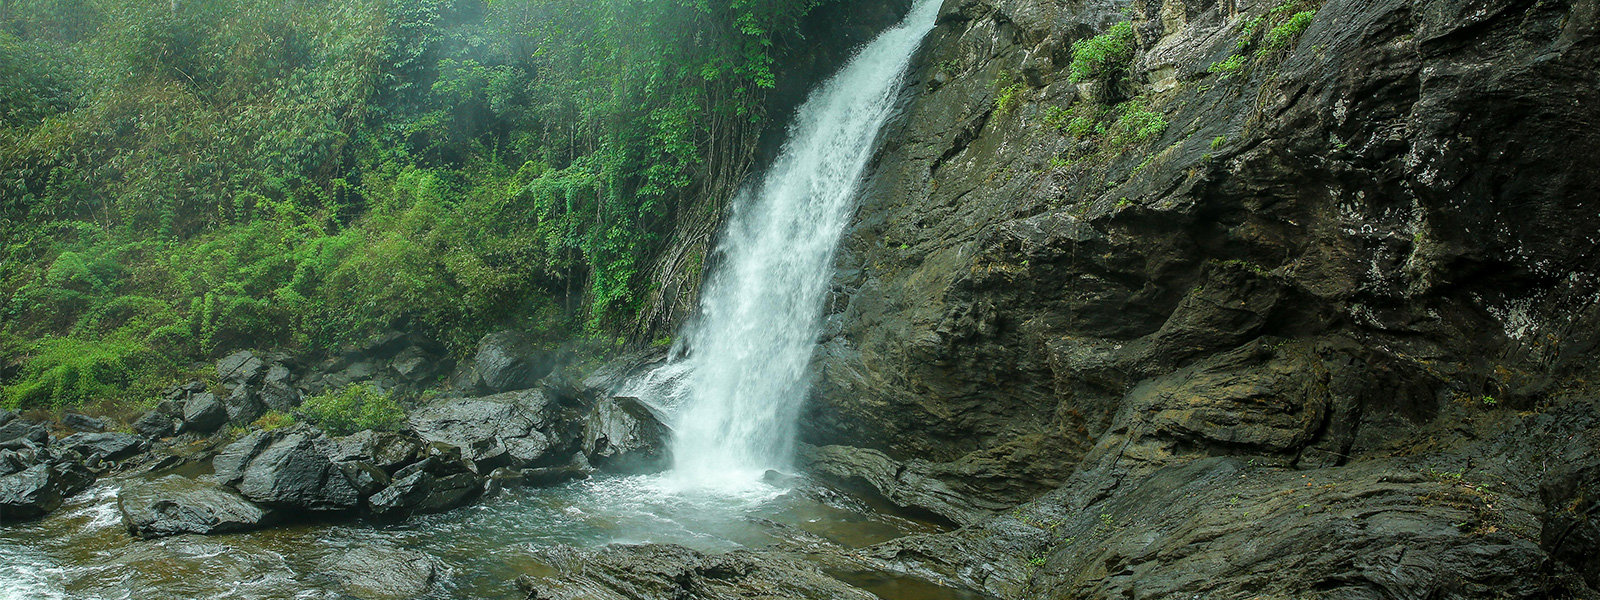 Soojipara Waterfalls Wayanad 